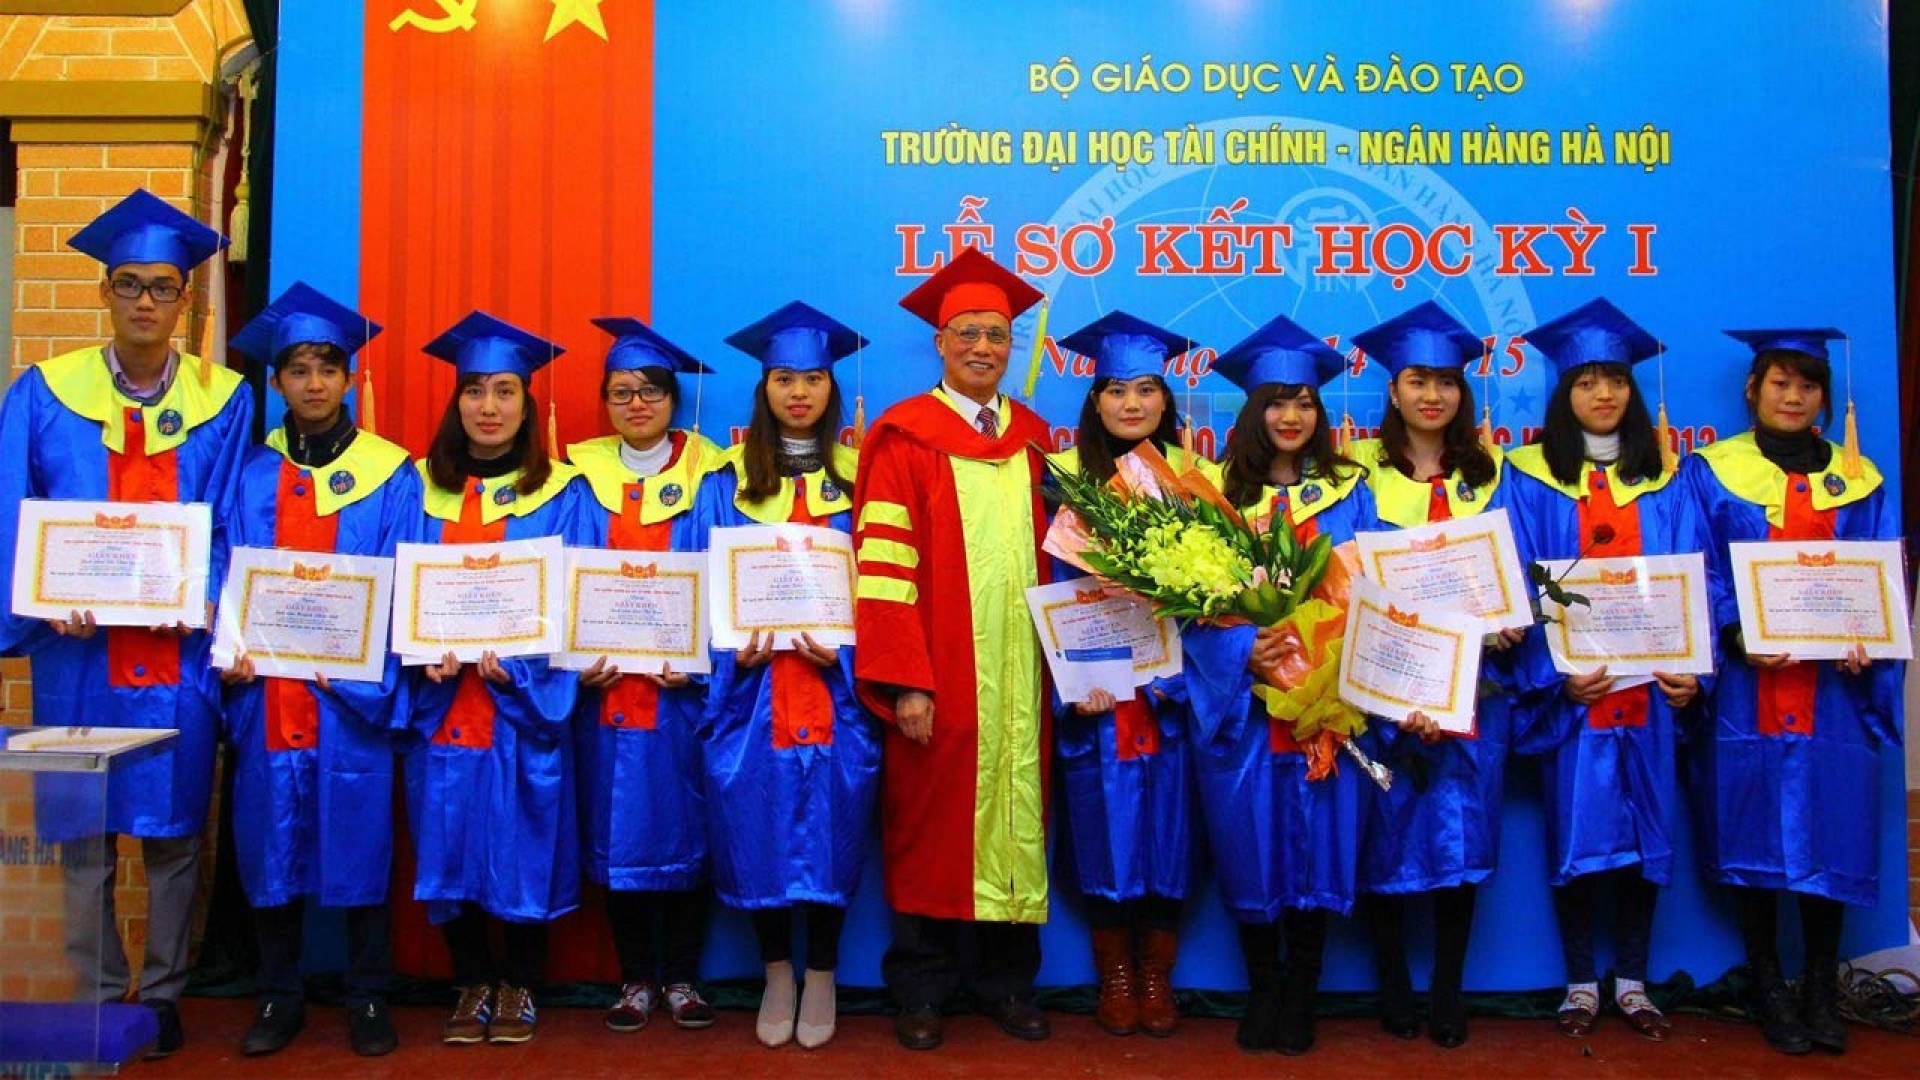 Bật mí chuyện chưa kể về trường Đại học Tài chính – Ngân hàng Hà Nội